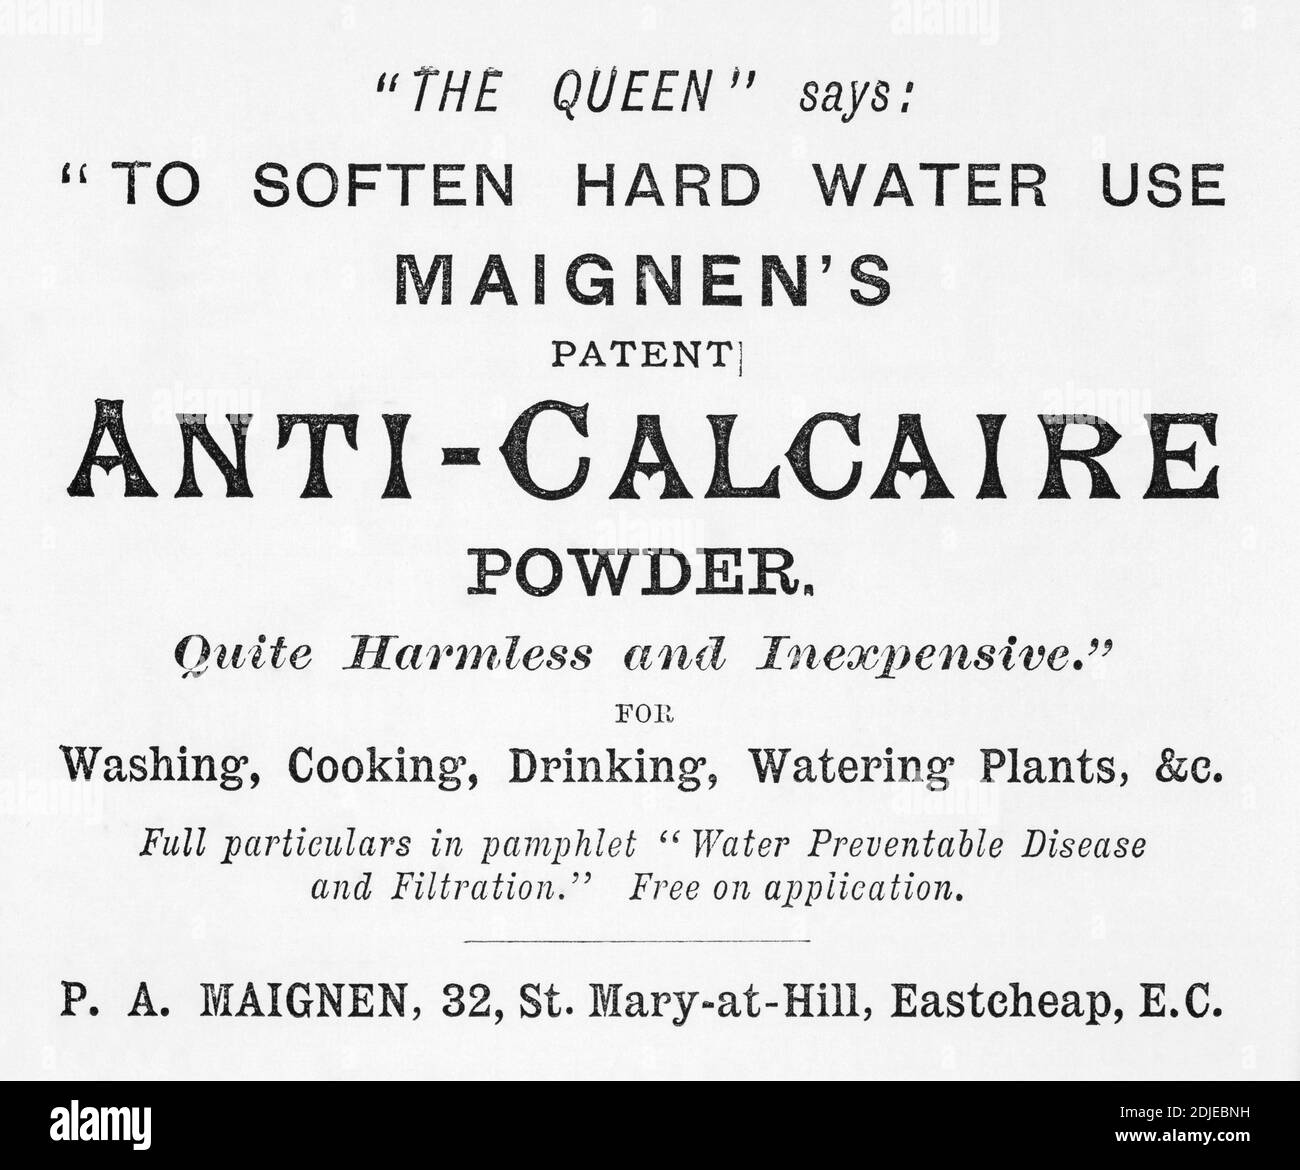 1886 viktorianischen Wasserenthärter Werbung. Es scheint, dass sie das gleiche Problem mit hartem Wasser hatten. Für die Geschichte der Werbung, & viktorianischen Haushalt Leben. Stockfoto